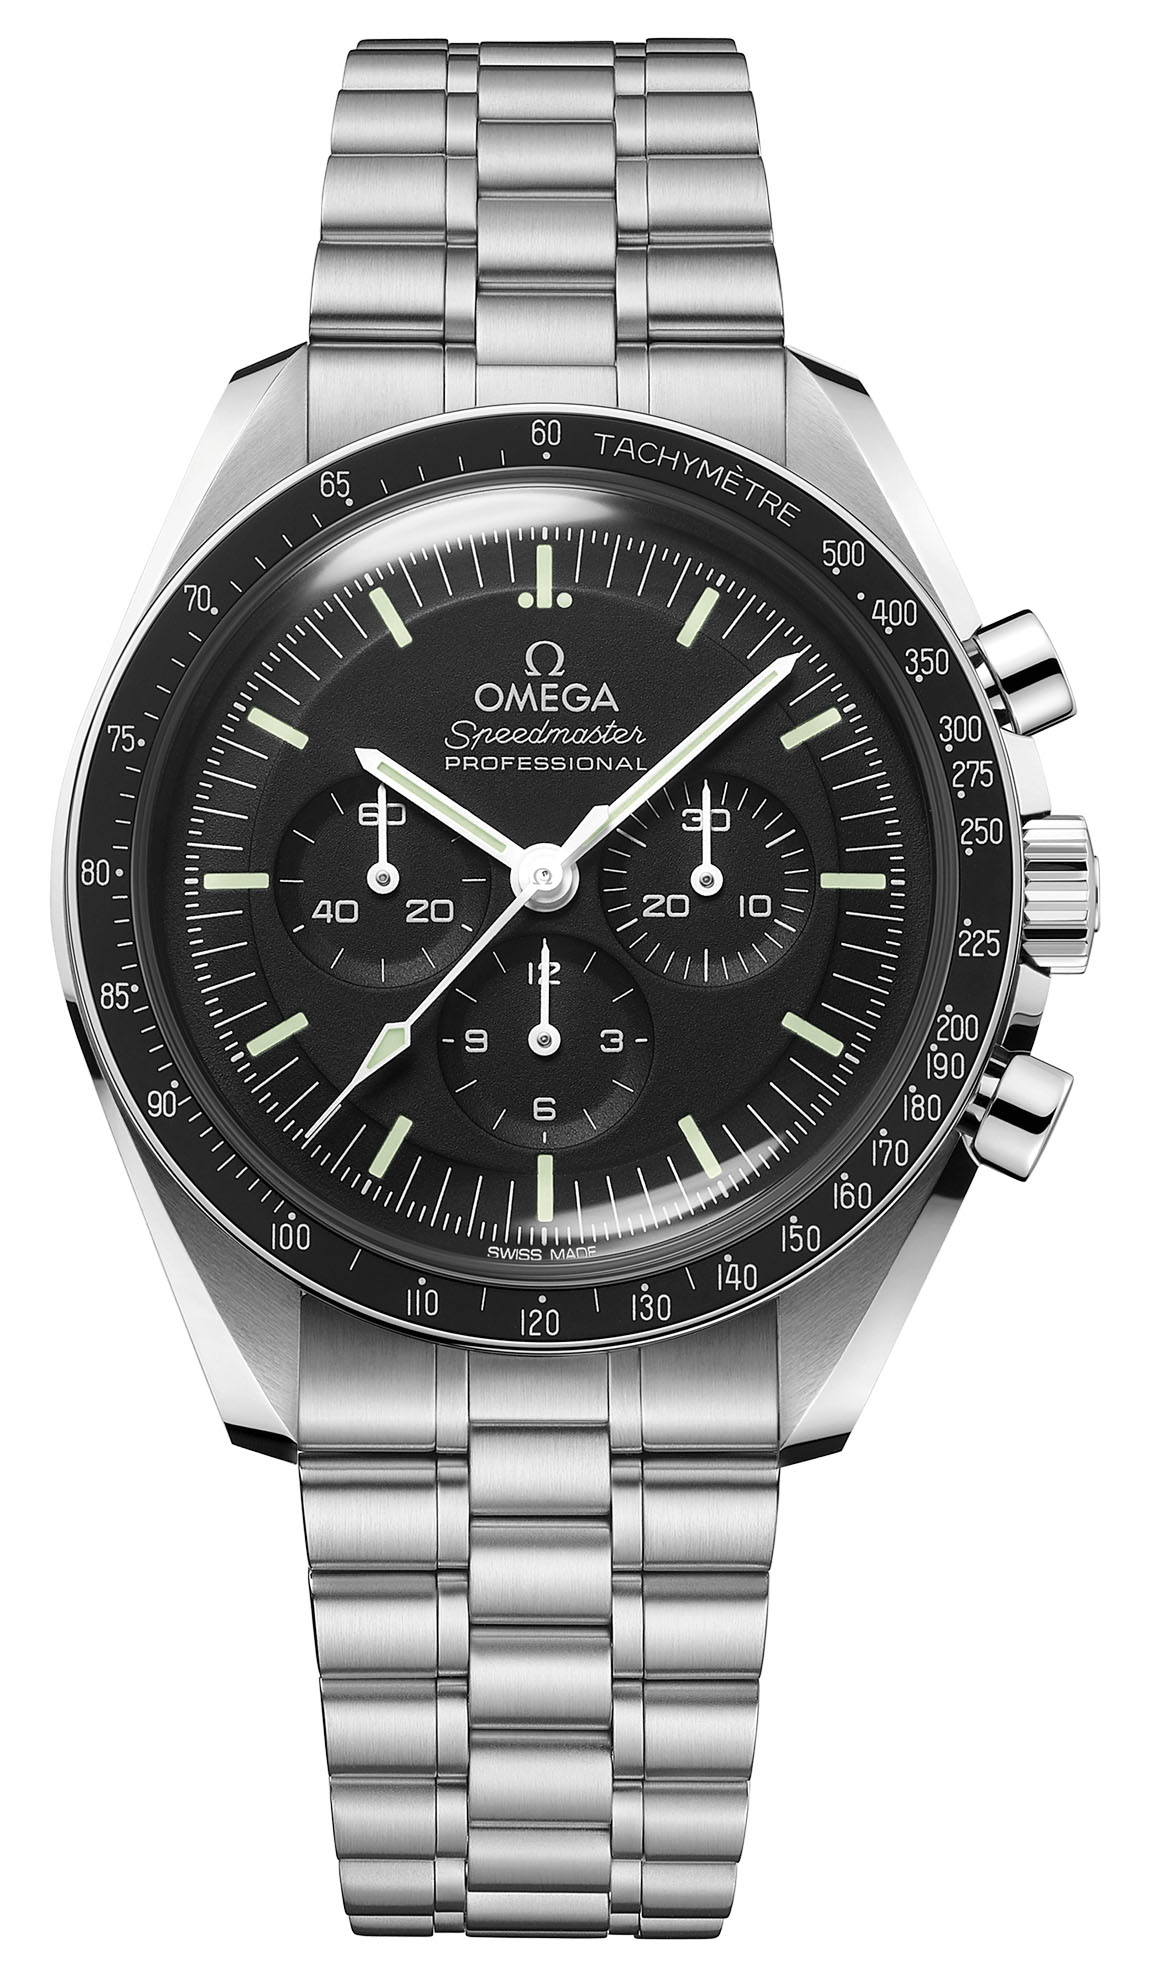 Omega Speedmaster Moonwatch Professional Master Chronometer 3861 - steel on steel hesalite 310.30.42.50.01.001